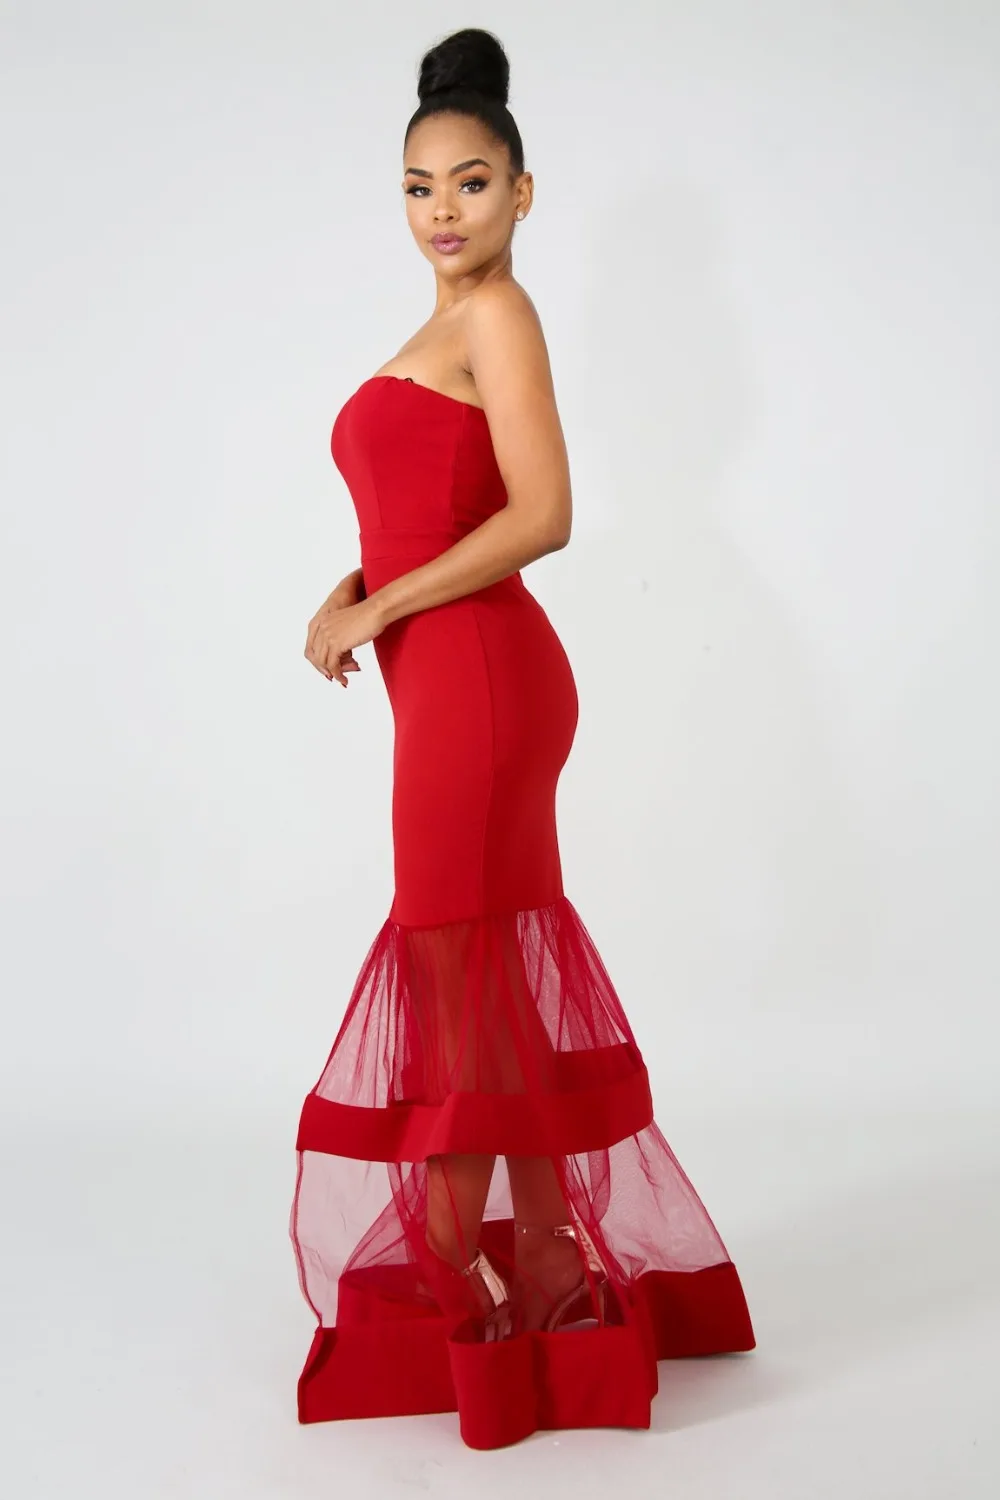 Сетчатое лоскутное с открытыми плечами длинное платье для женщин Элегантный без бретелек Русалочка вечерние Макси платье сексуальное облегающее нарядное платье vestidos robe